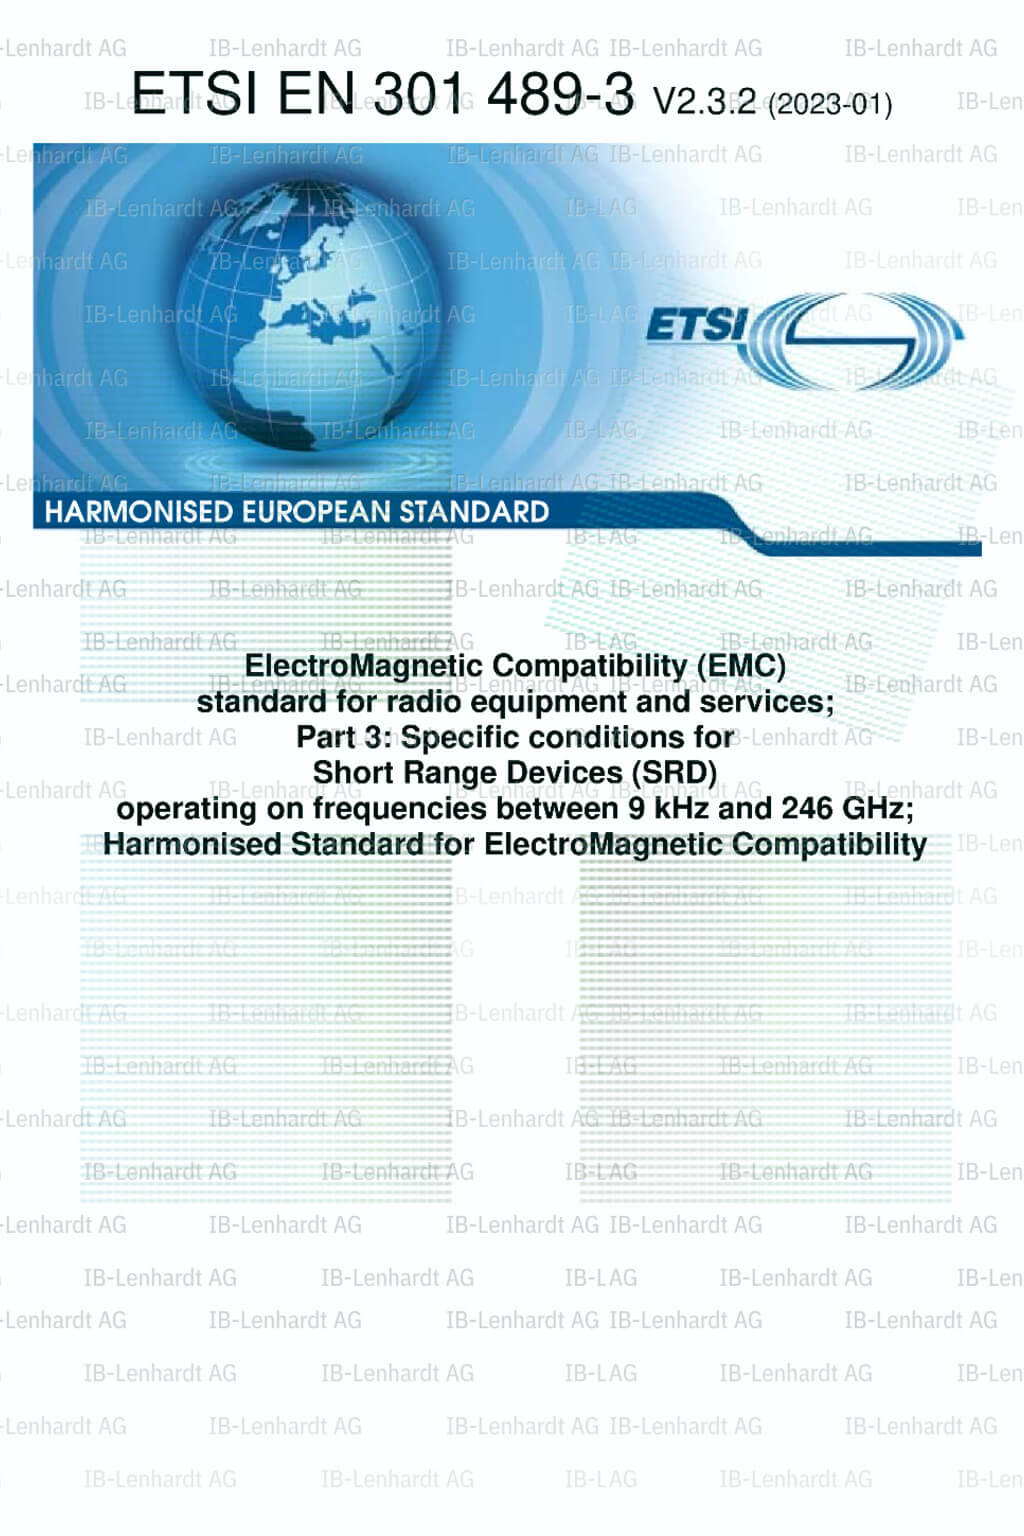 ETSI EN 301 489-03 V2.3.2